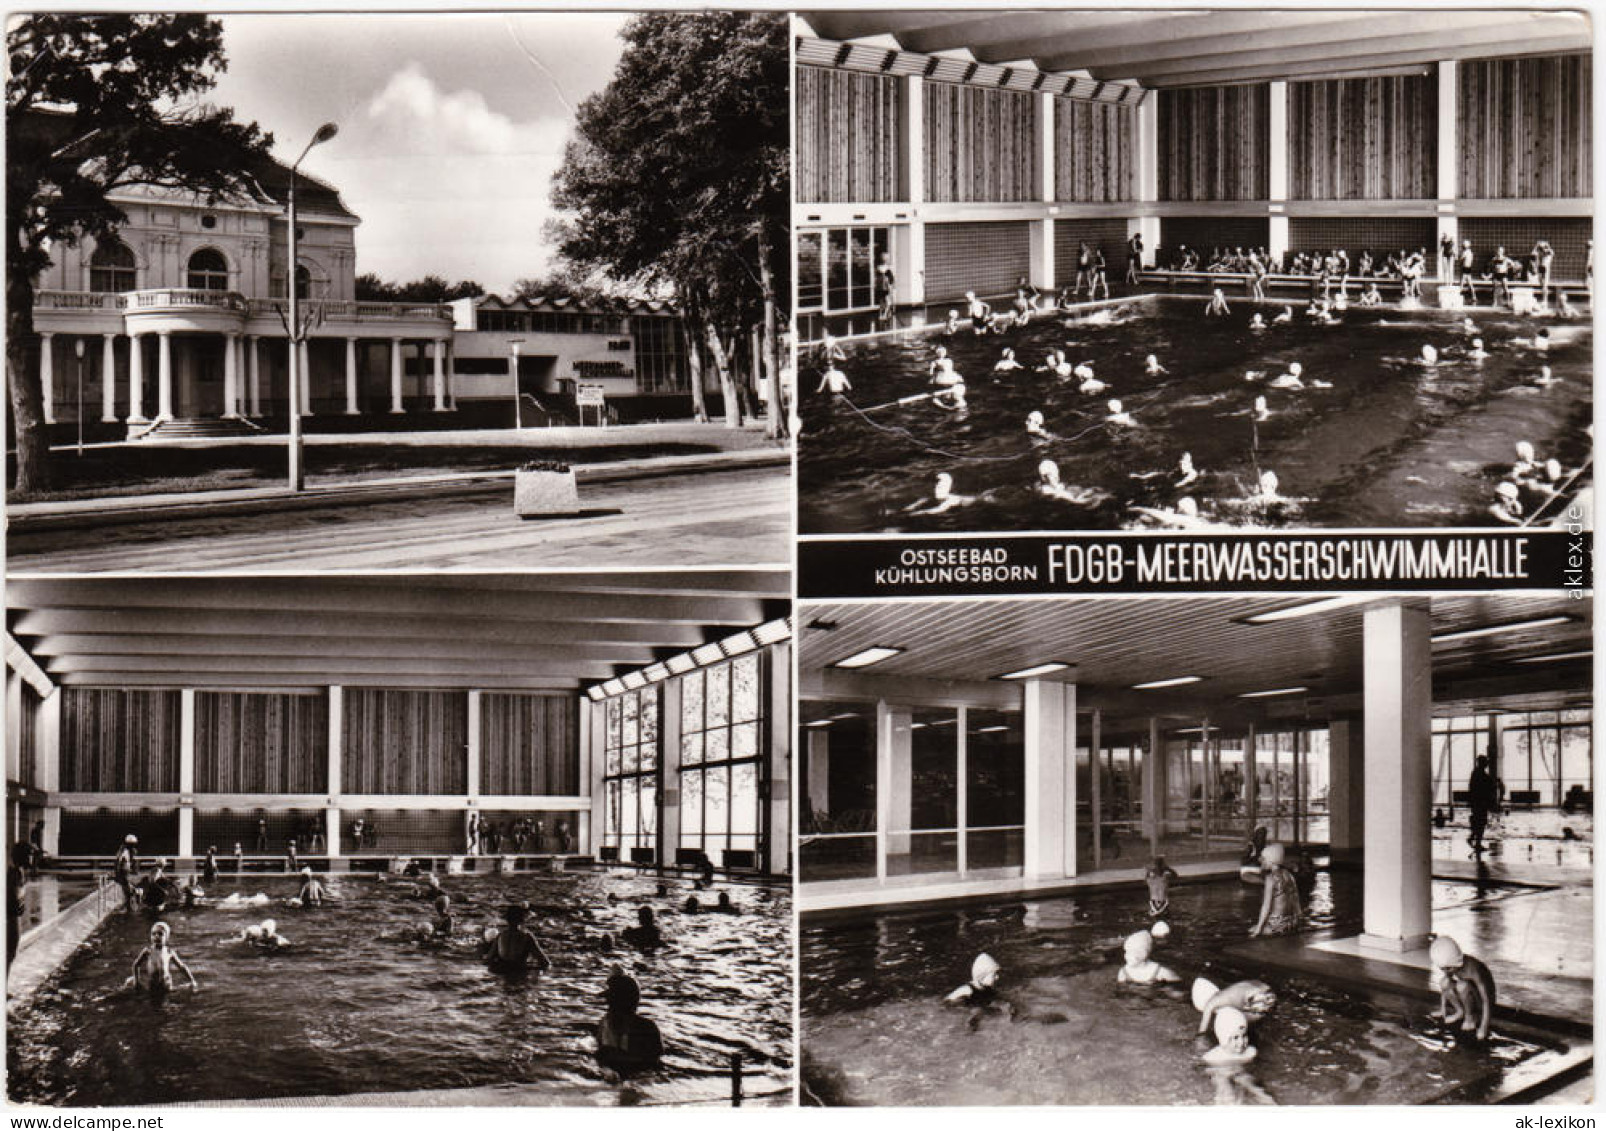 Kühlungsborn FDGB-Mehrwasserschwimmhalle Schwimmbad 1985  - Kuehlungsborn